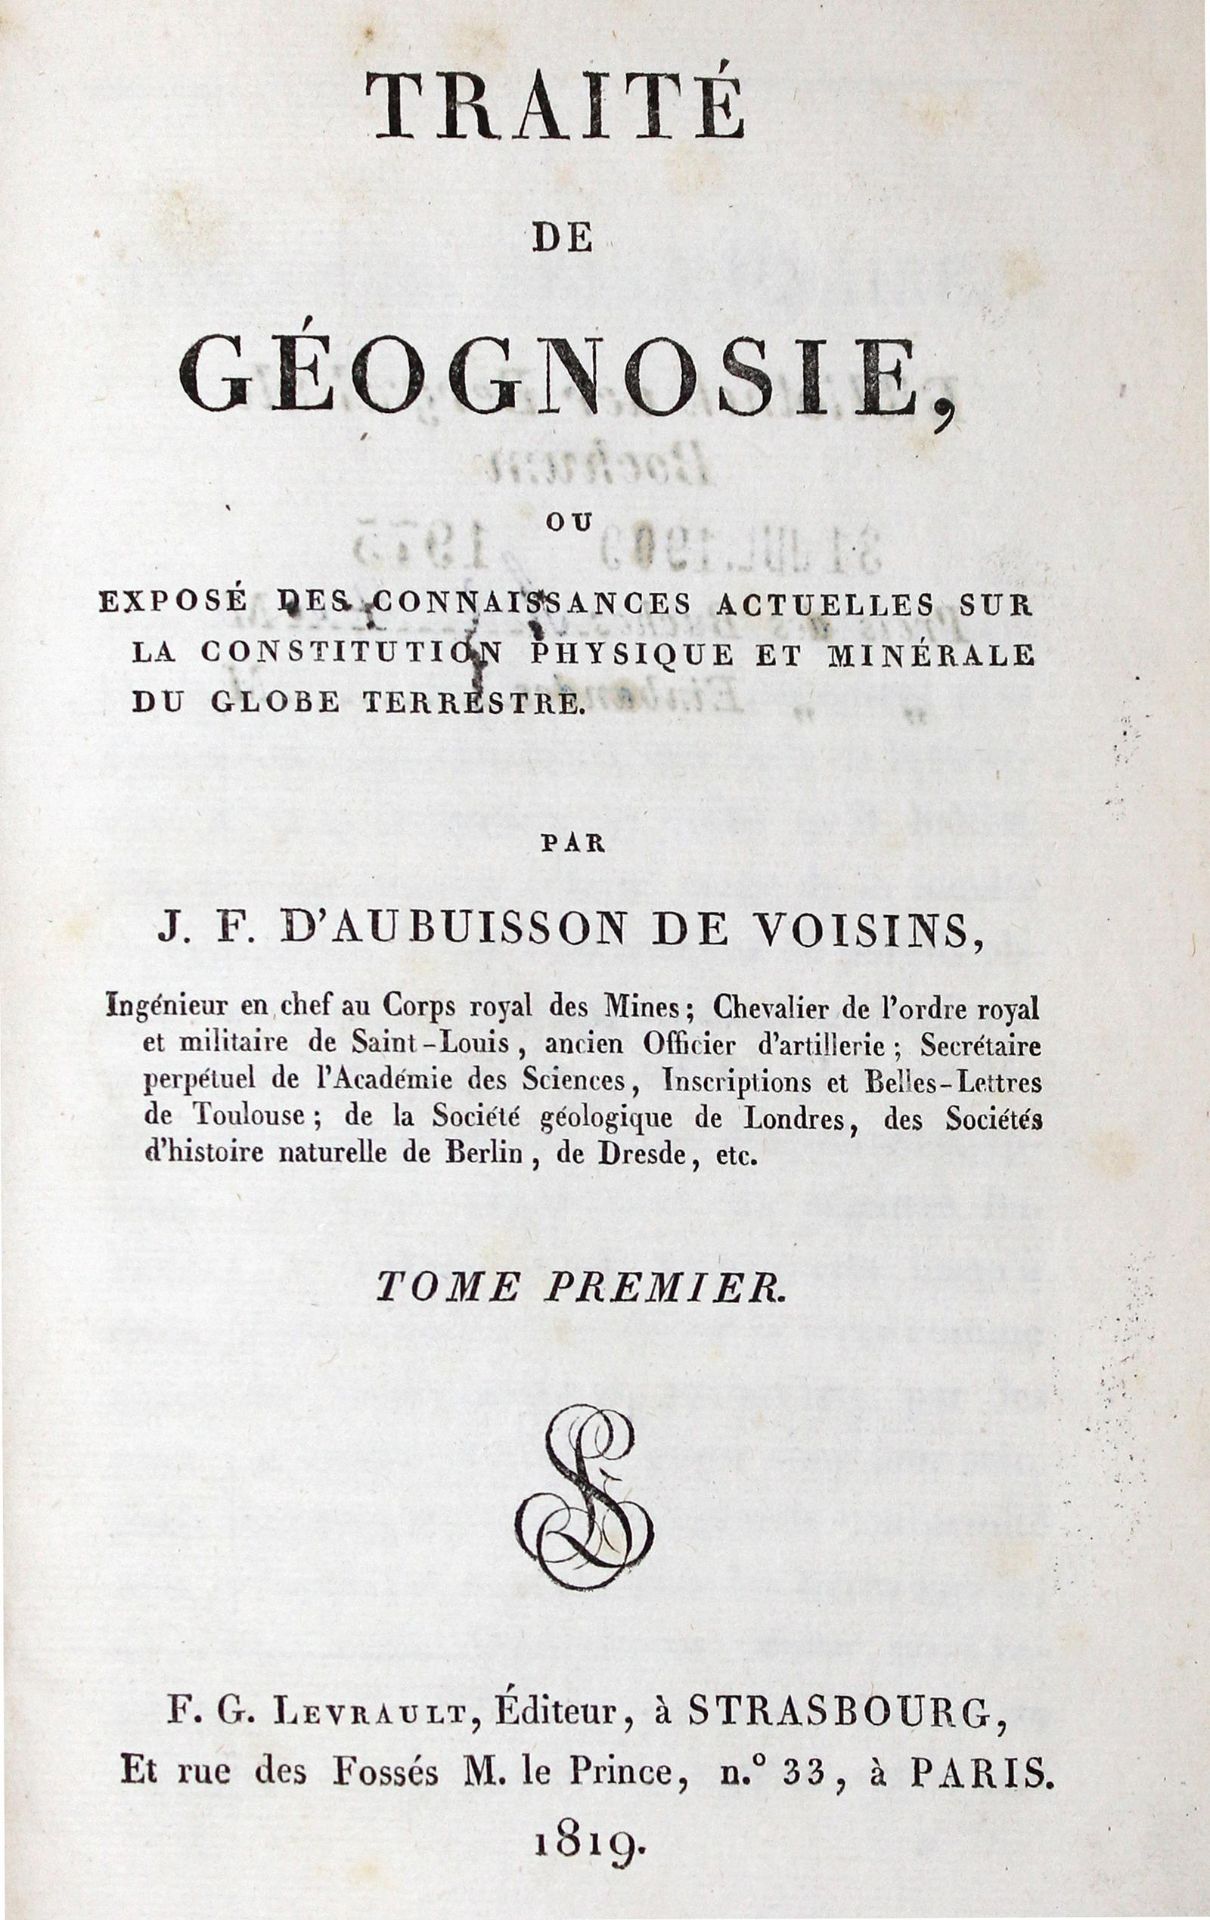 Aubuisson de Voisins,J.F.de.